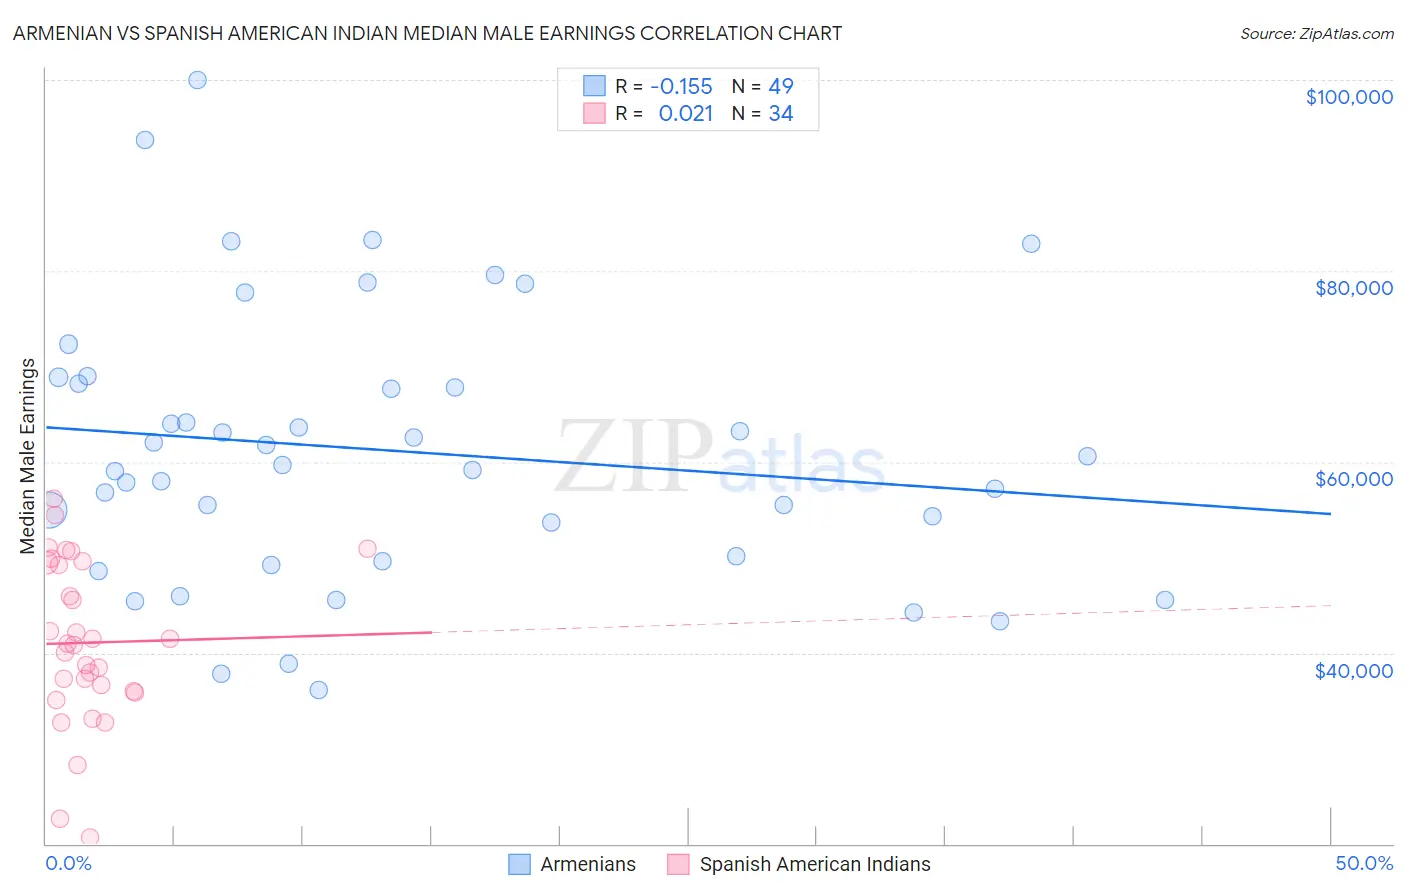 Armenian vs Spanish American Indian Median Male Earnings